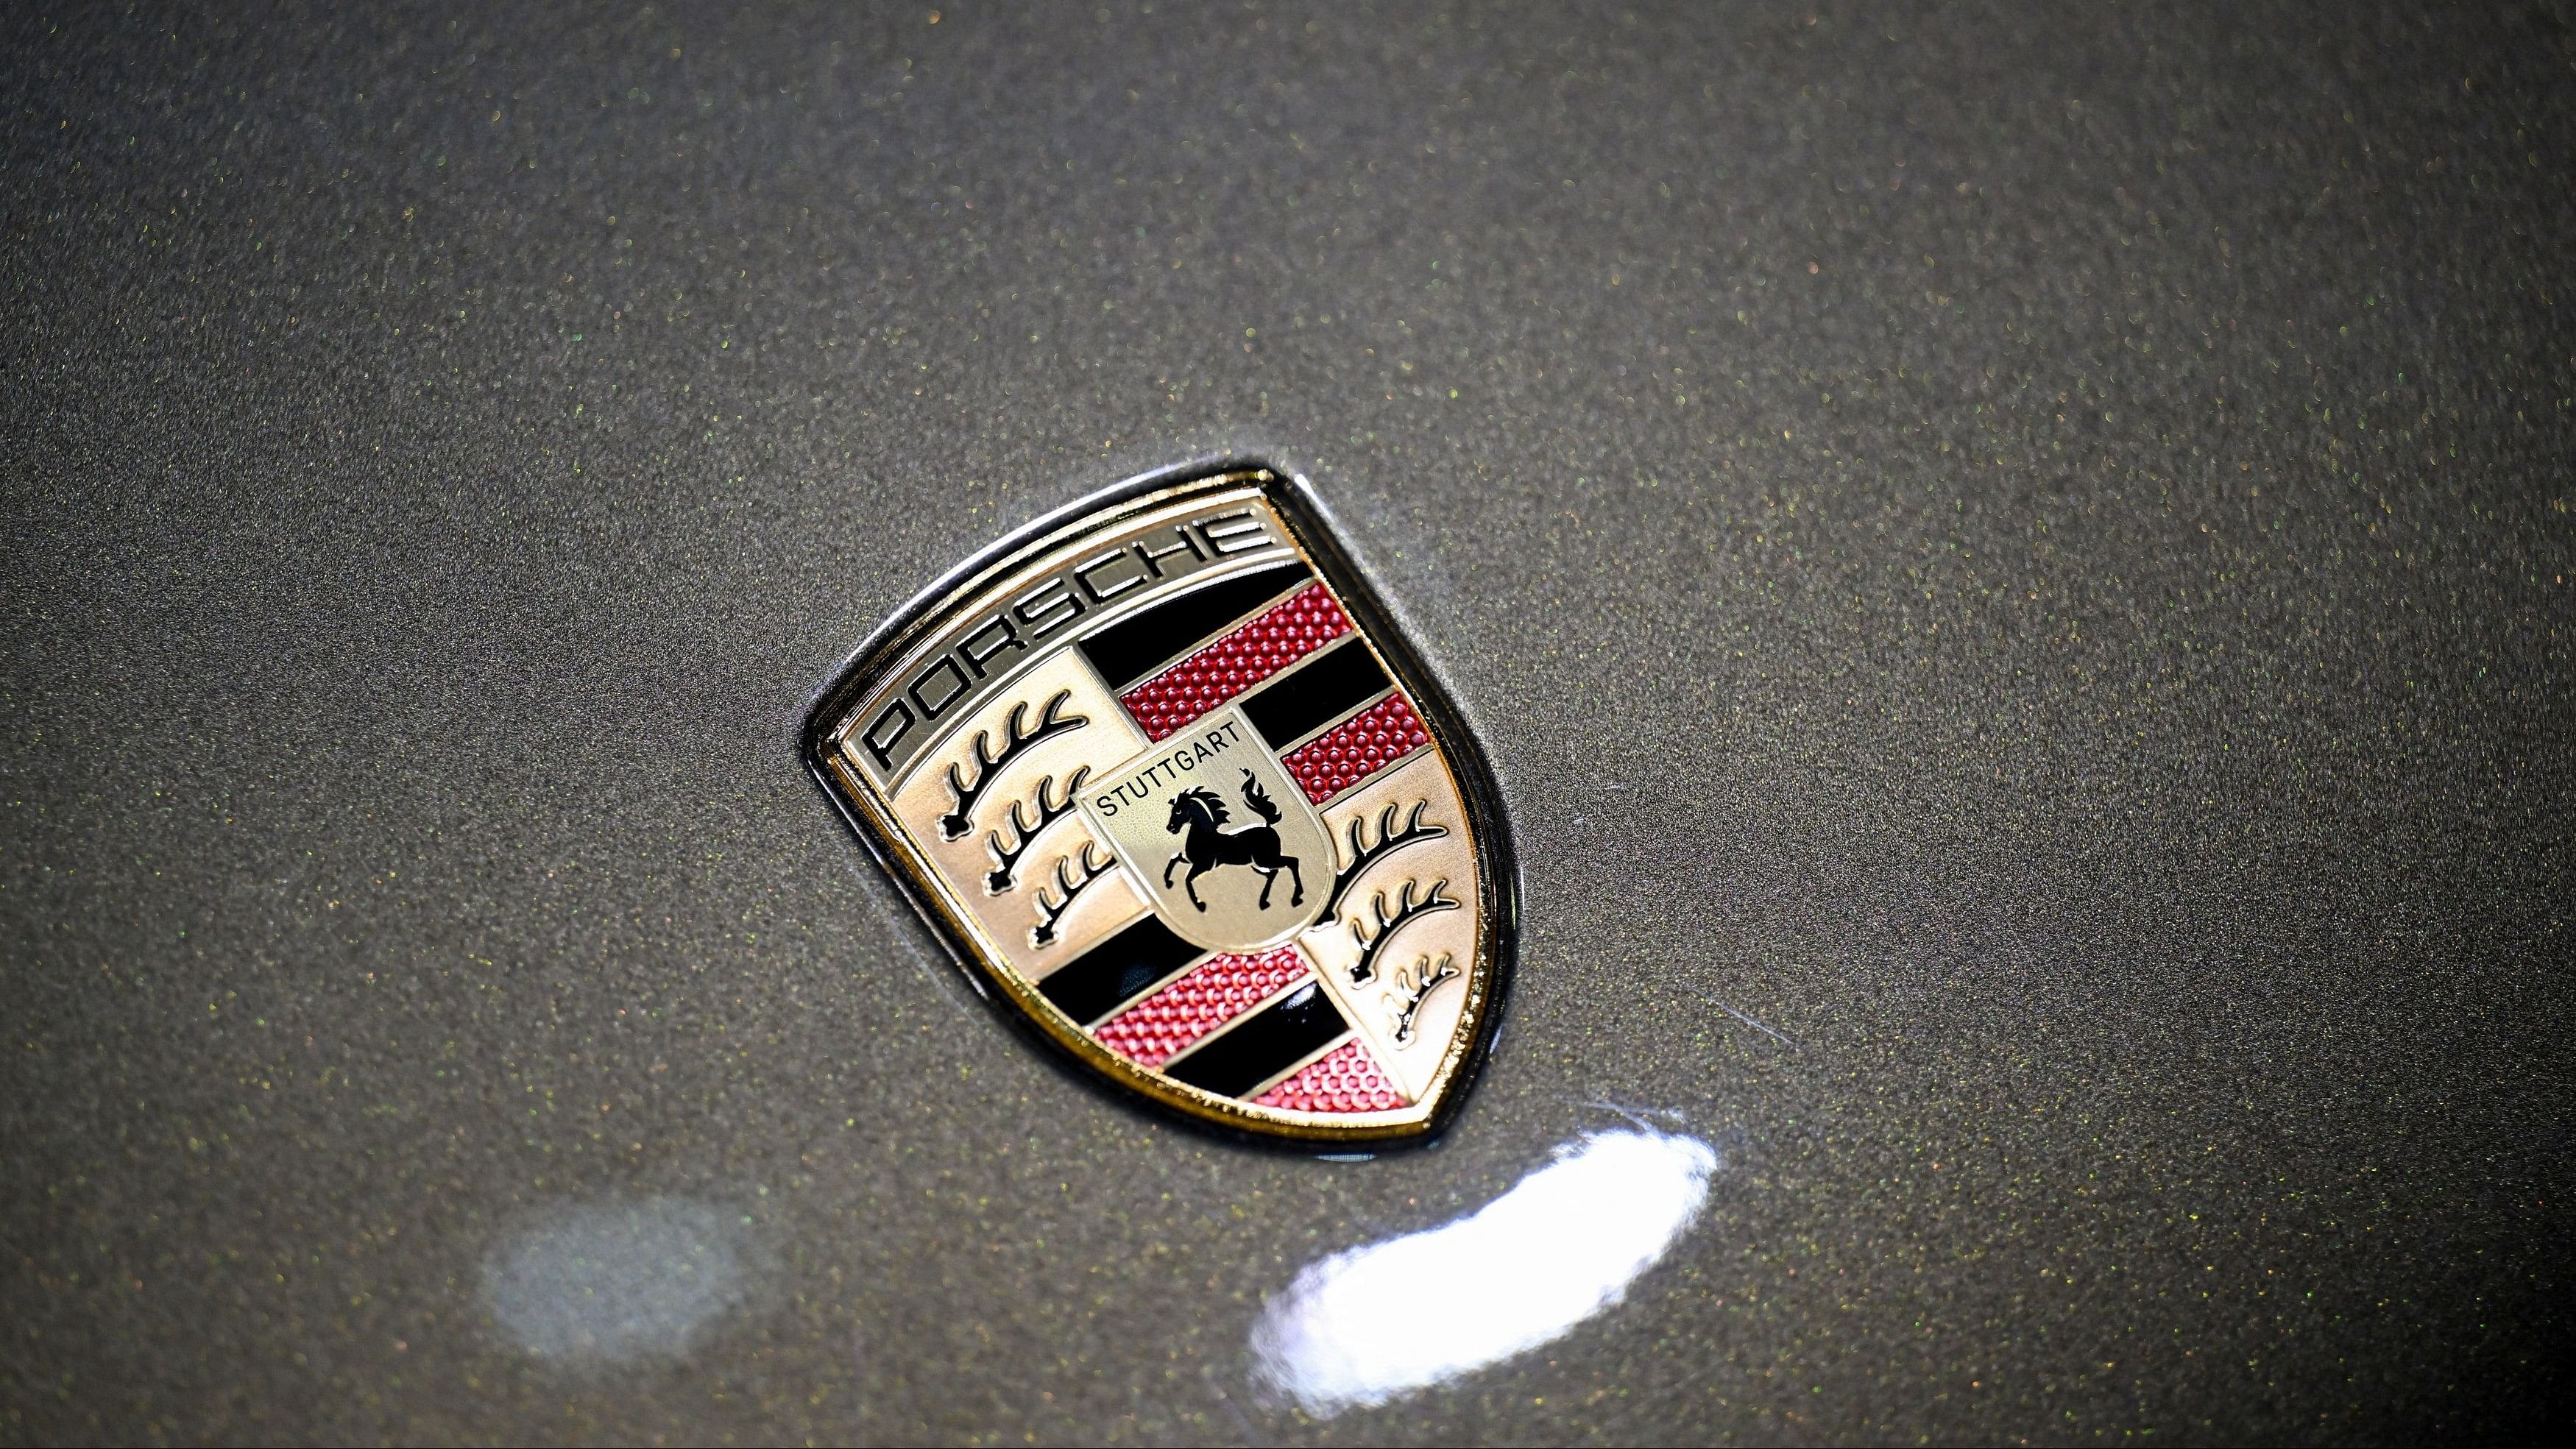 <div class="paragraphs"><p>Porsche logo.</p></div>